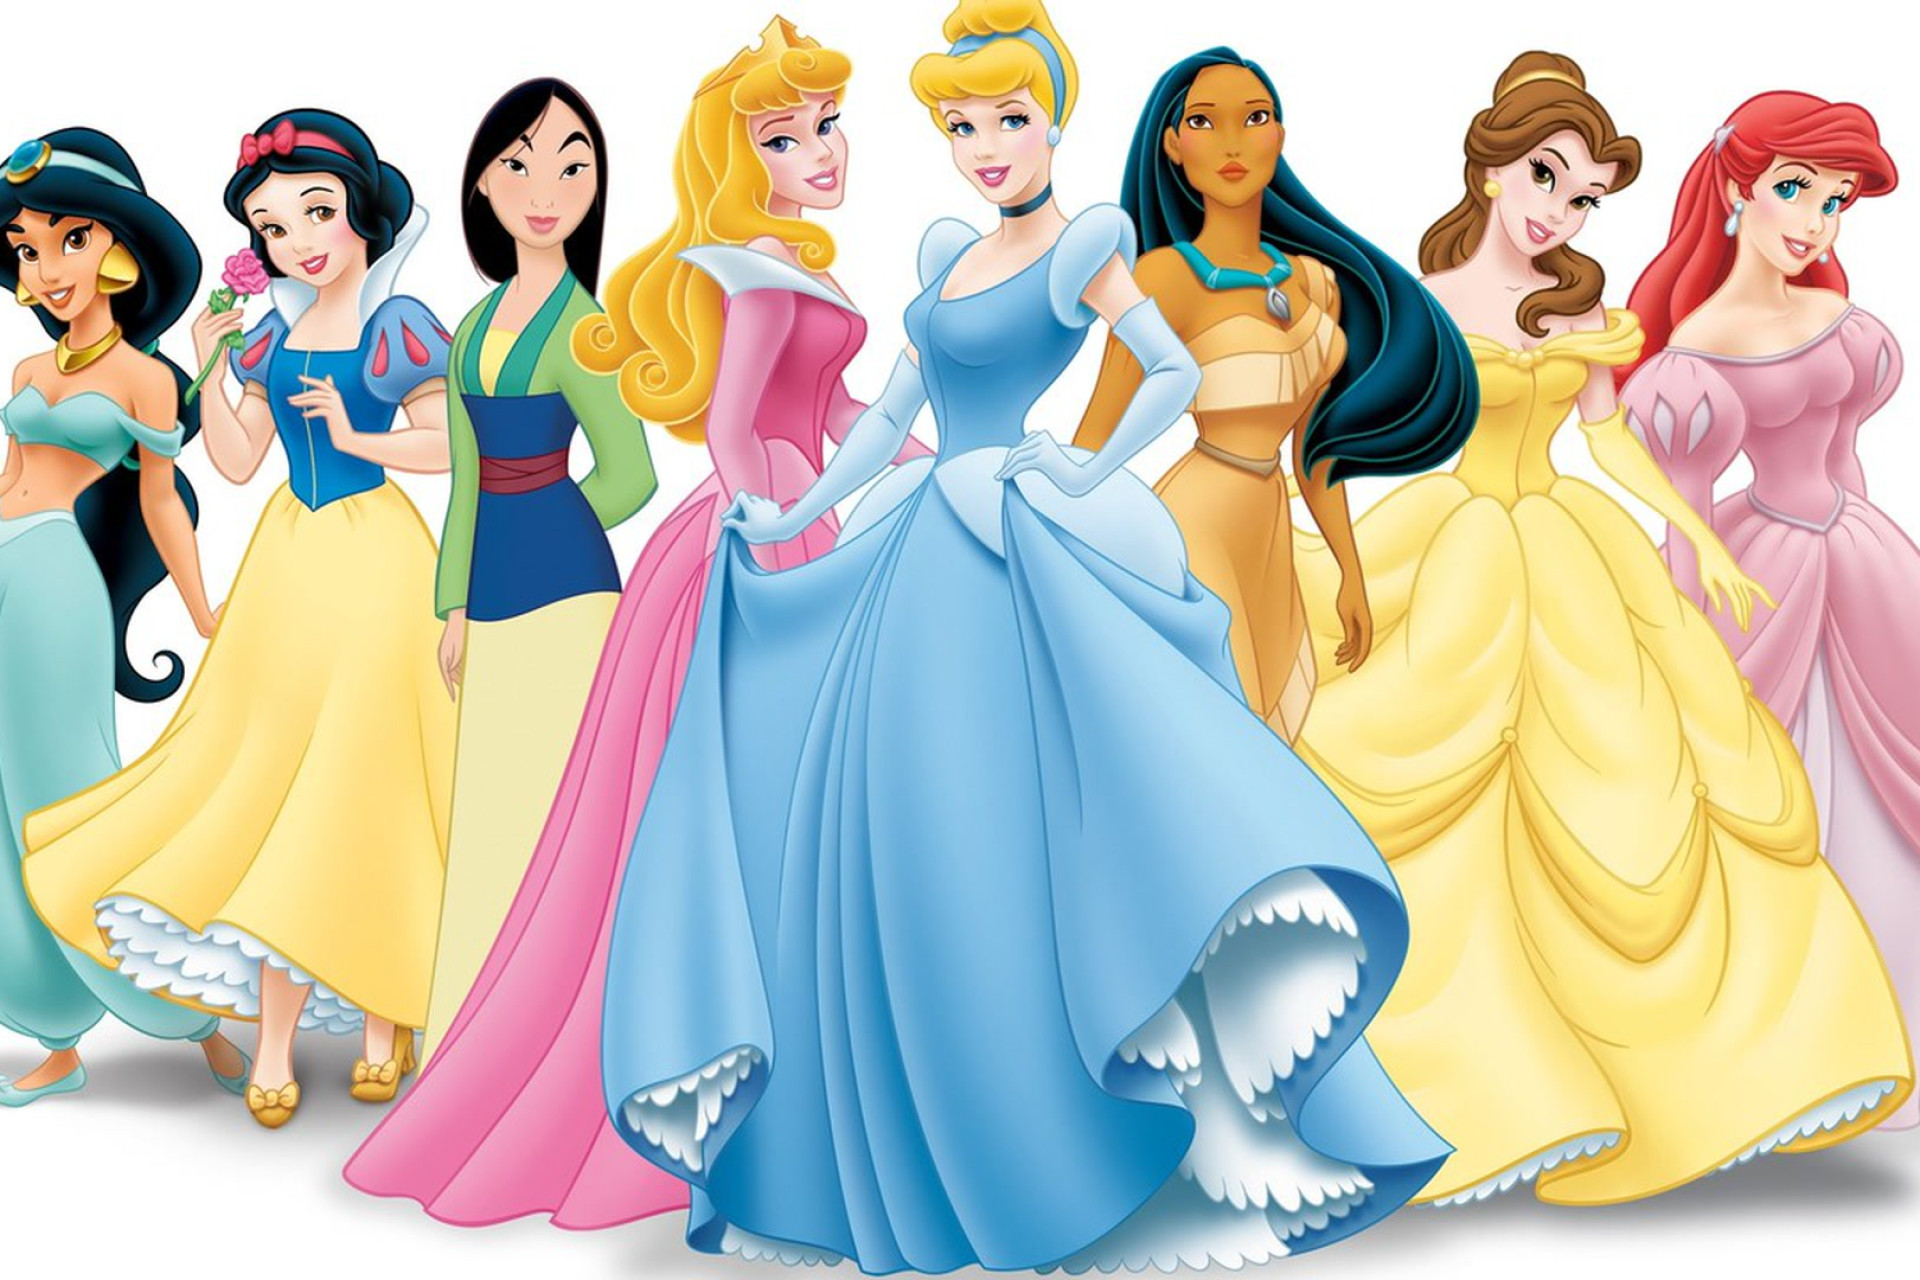 Les princesses Disney avec leurs belles tenues colorées